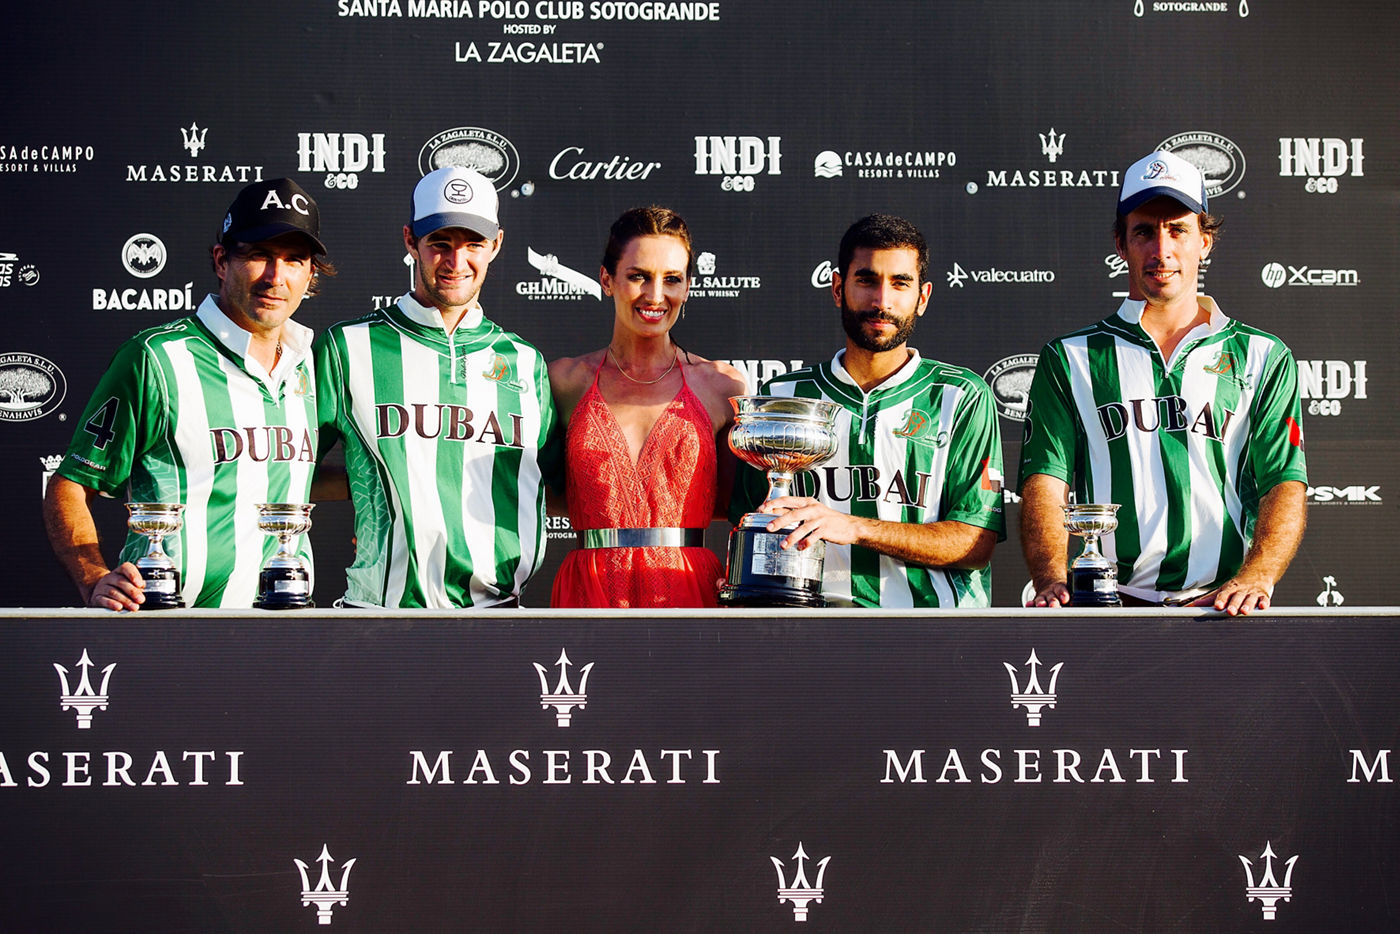 Maserati Dubai Polo team